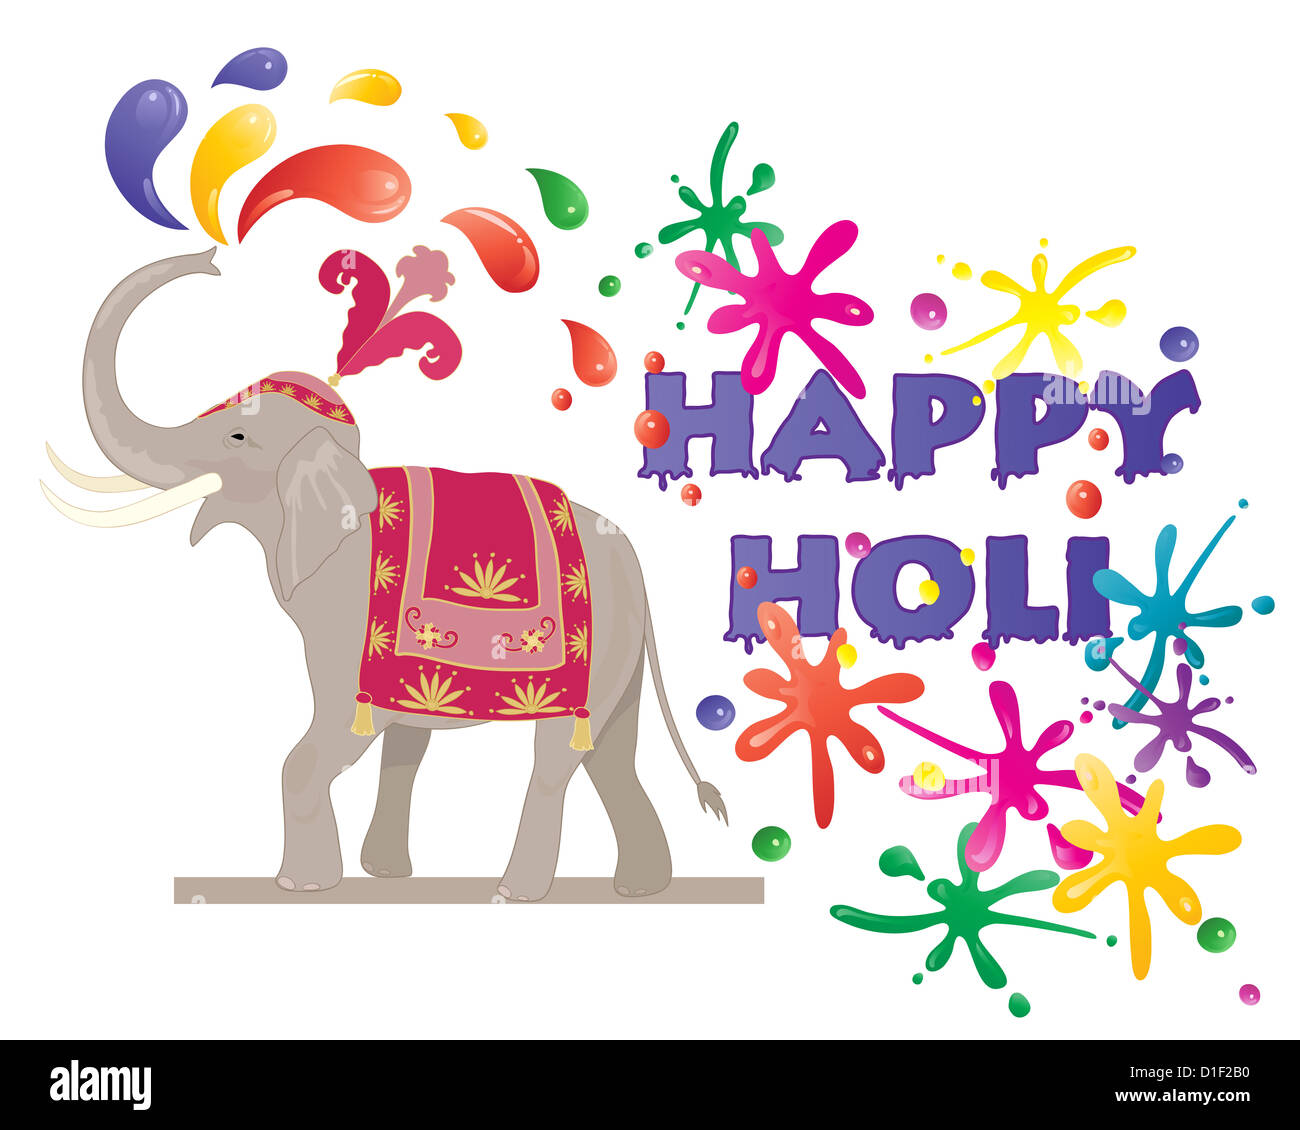 Ilustración de un elefante ceremonial de pulverización de pintura de colores para celebrar el festival hindú de Holi aislado en blanco Foto de stock